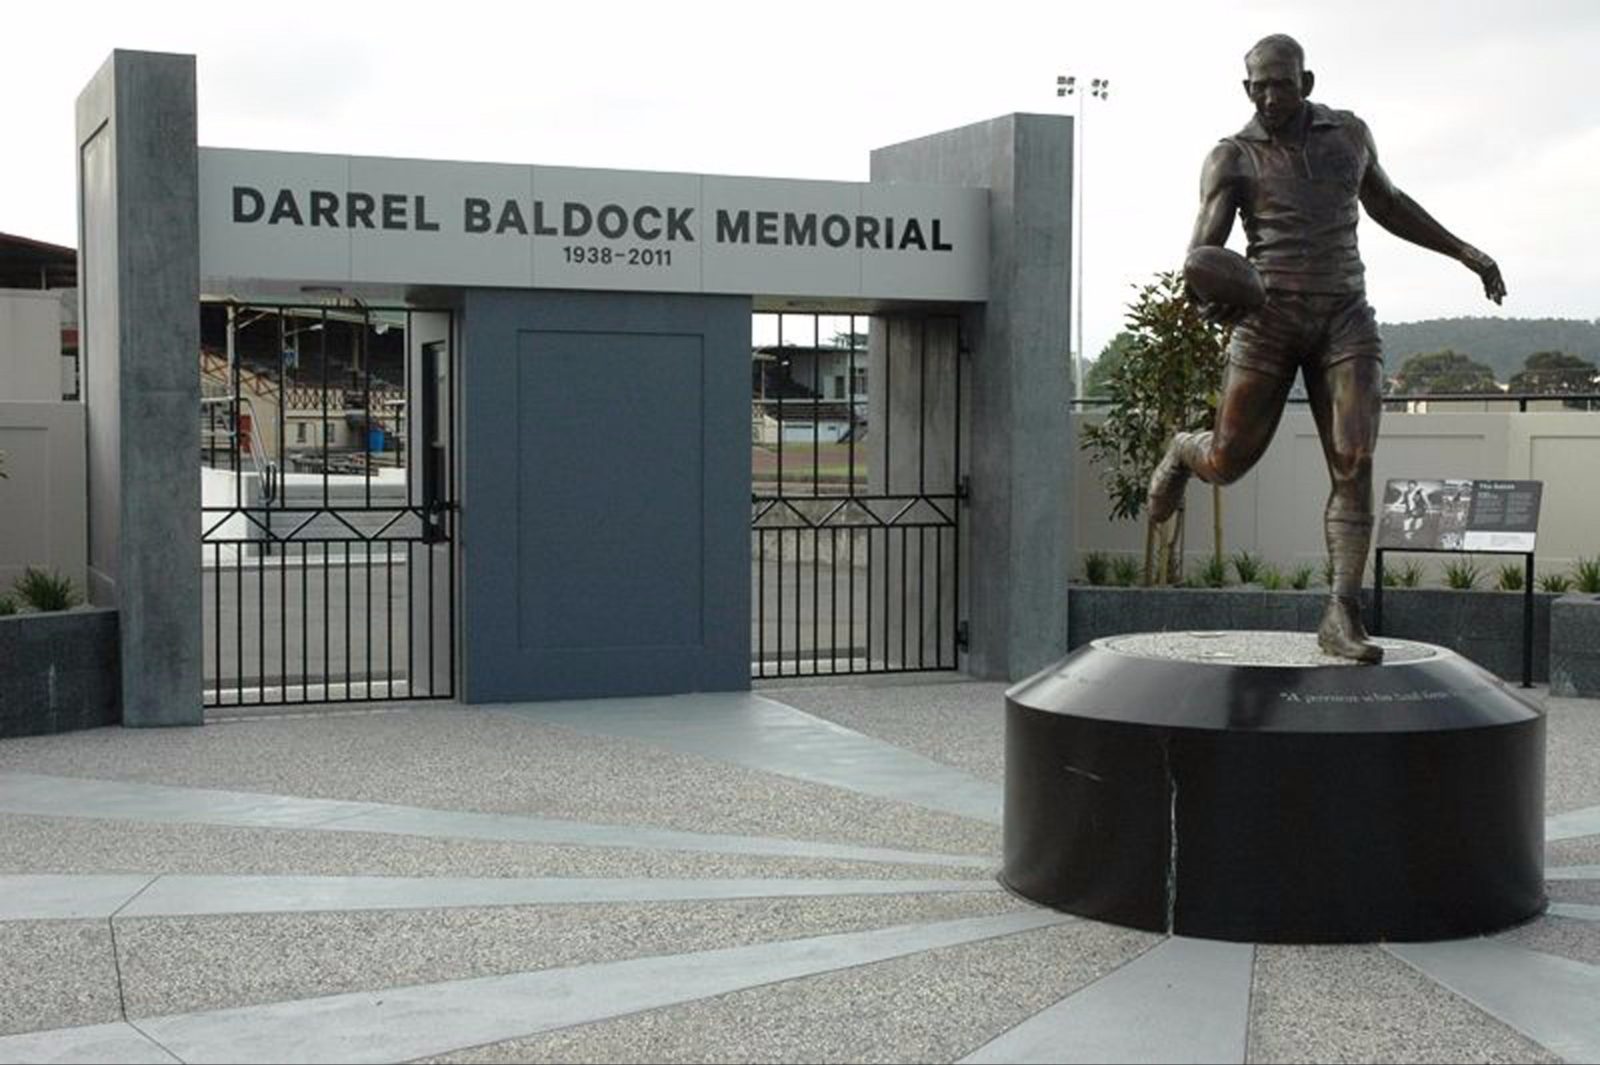 Darrel Baldock Memorial